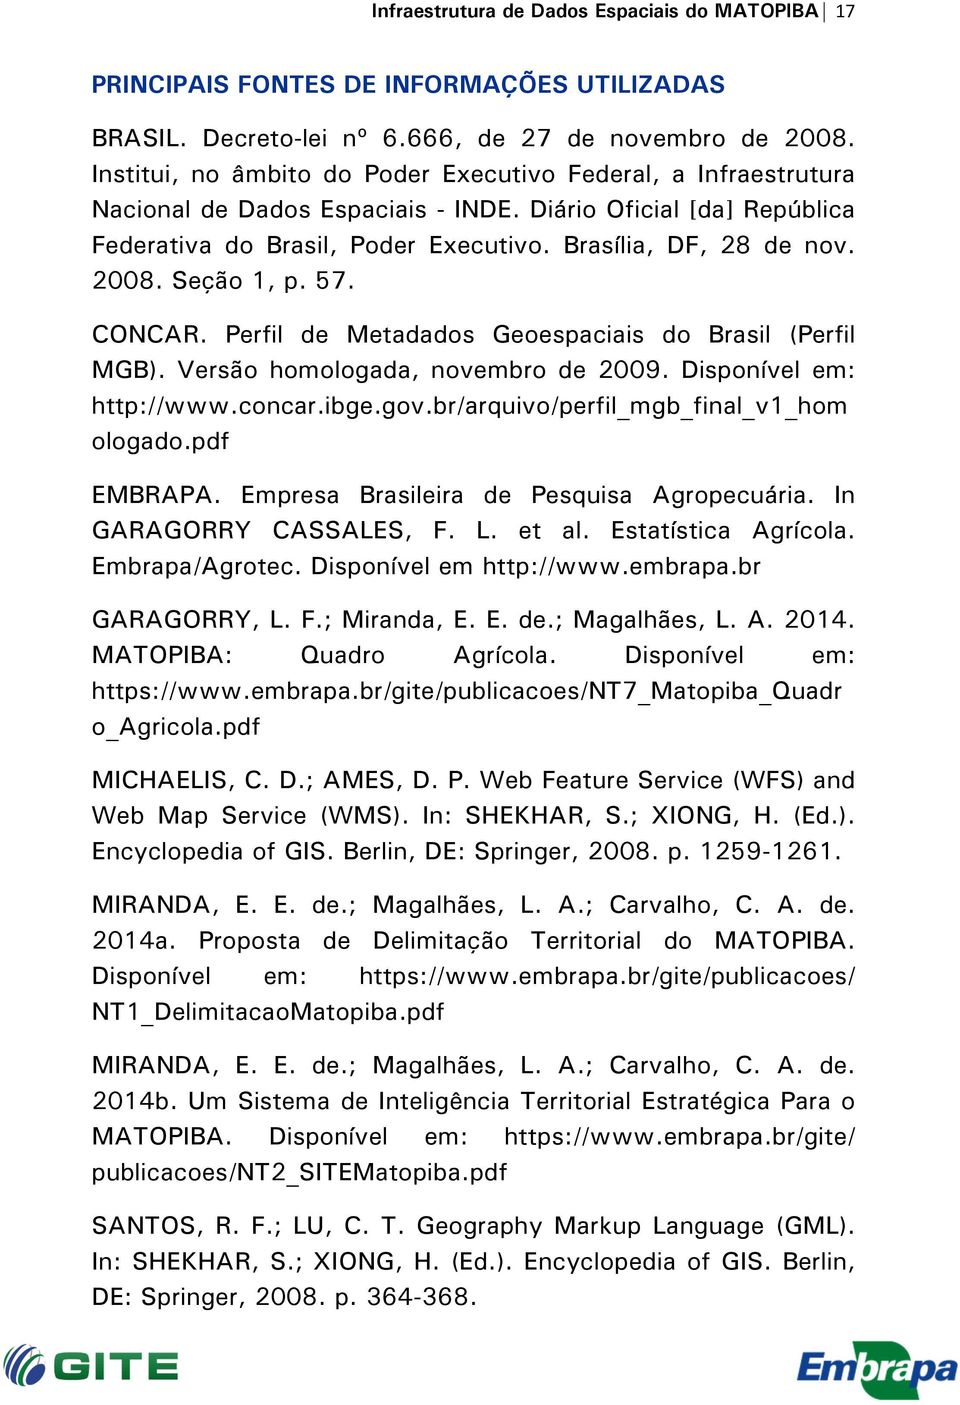 Seção 1, p. 57. CONCAR. Perfil de Metadados Geoespaciais do Brasil (Perfil MGB). Versão homologada, novembro de 2009. Disponível em: http://www.concar.ibge.gov.